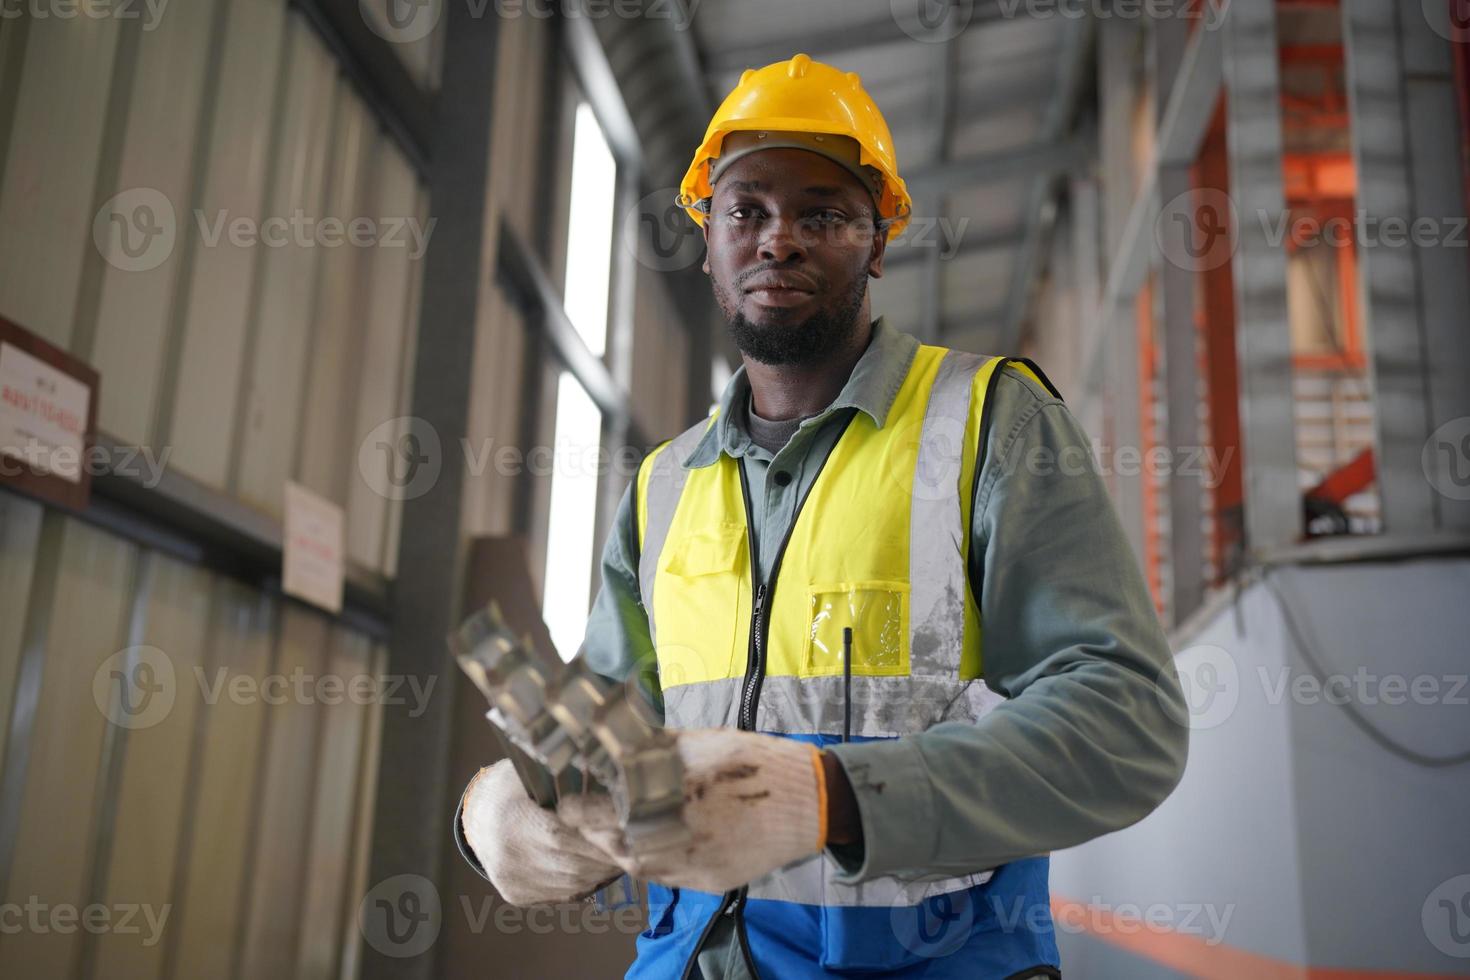 engenheiro industrial de homens usando um capacete de segurança em pé em uma fábrica industrial pesada. a manutenção procurando trabalhar em máquinas industriais e verificar a configuração do sistema de segurança na fábrica. foto